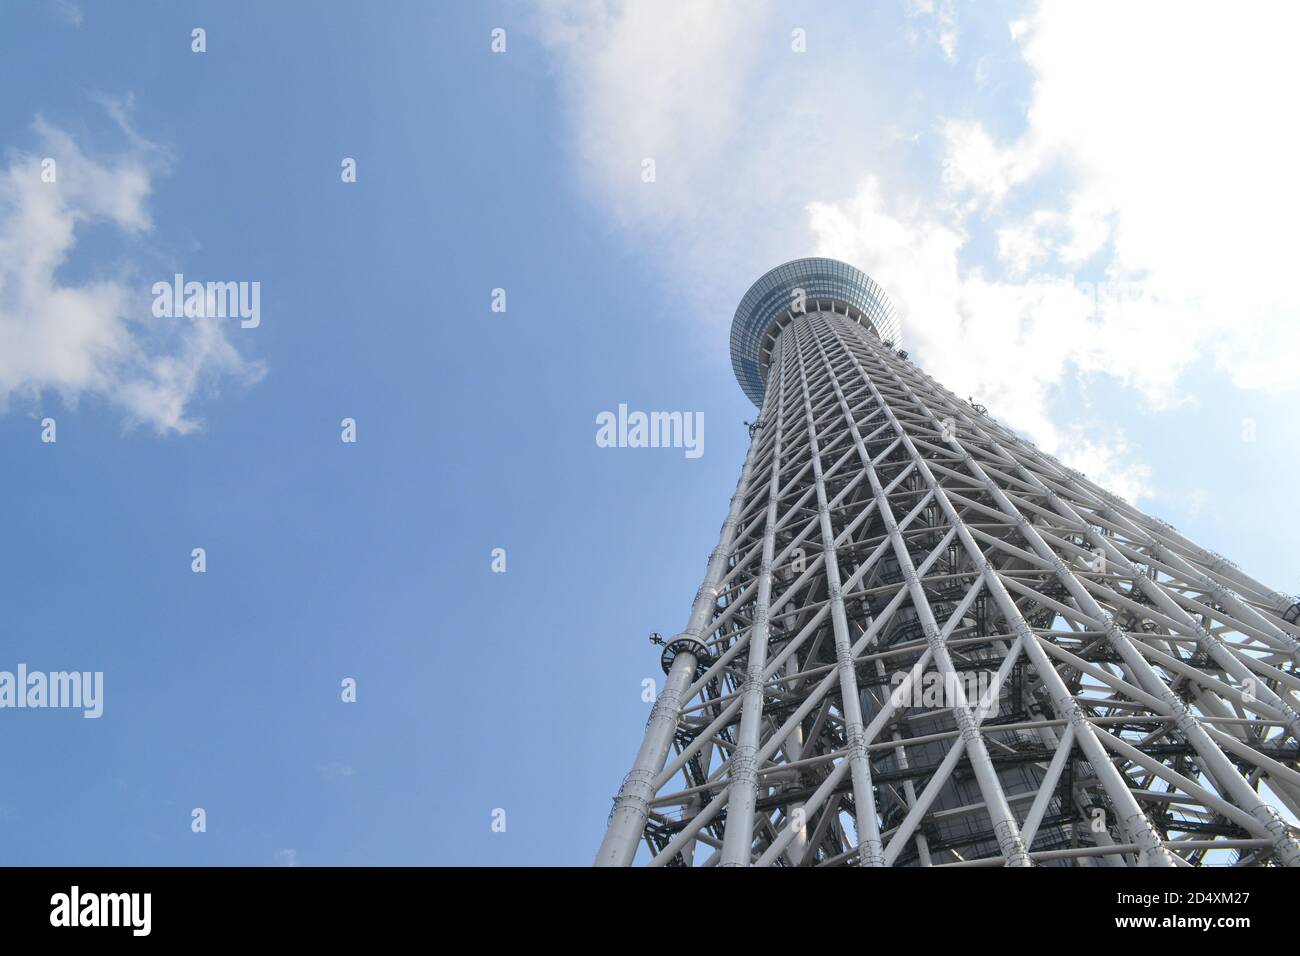 Tokio, Japan-2/27/16: Ein Blick aus dem Blickwinkel auf den Tokyo Sky Tree Tower; der Himmel ist halb bewölkt mit blauem Himmel, der nach oben guckt. Stockfoto